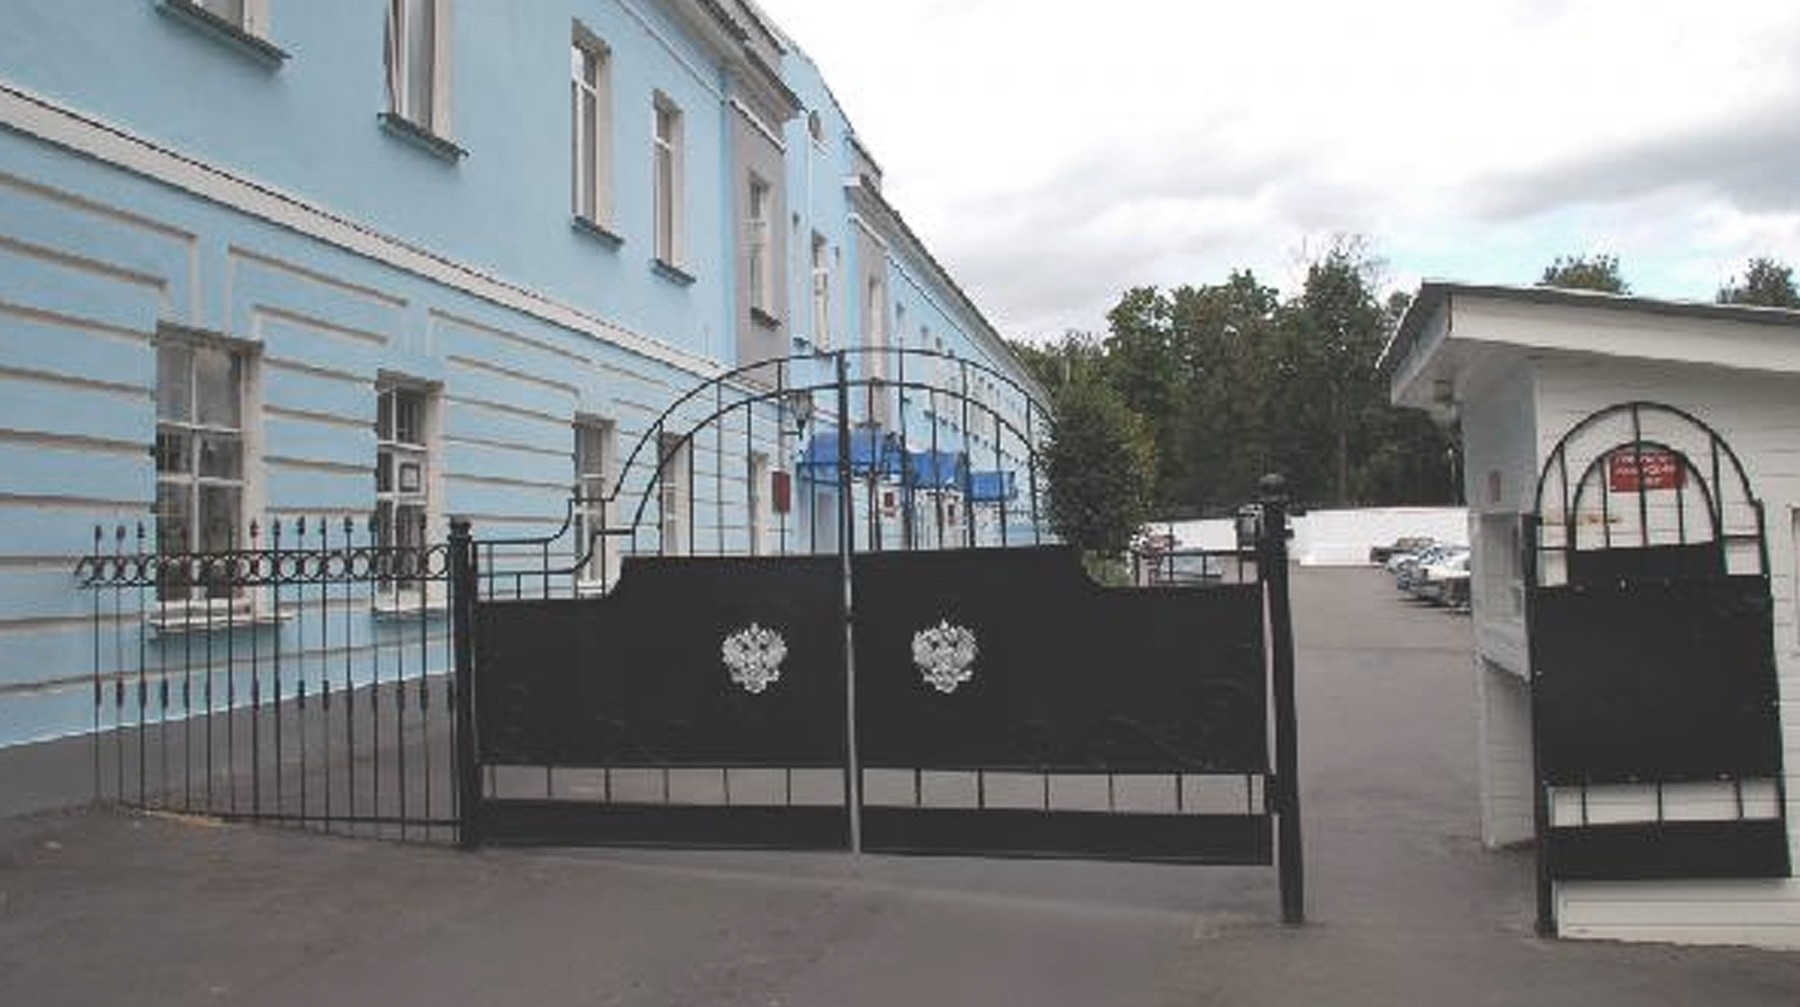 Dailystorm - ОНК: Заключенный «Владимирского централа» подтвердил, что сам откусил себе язык